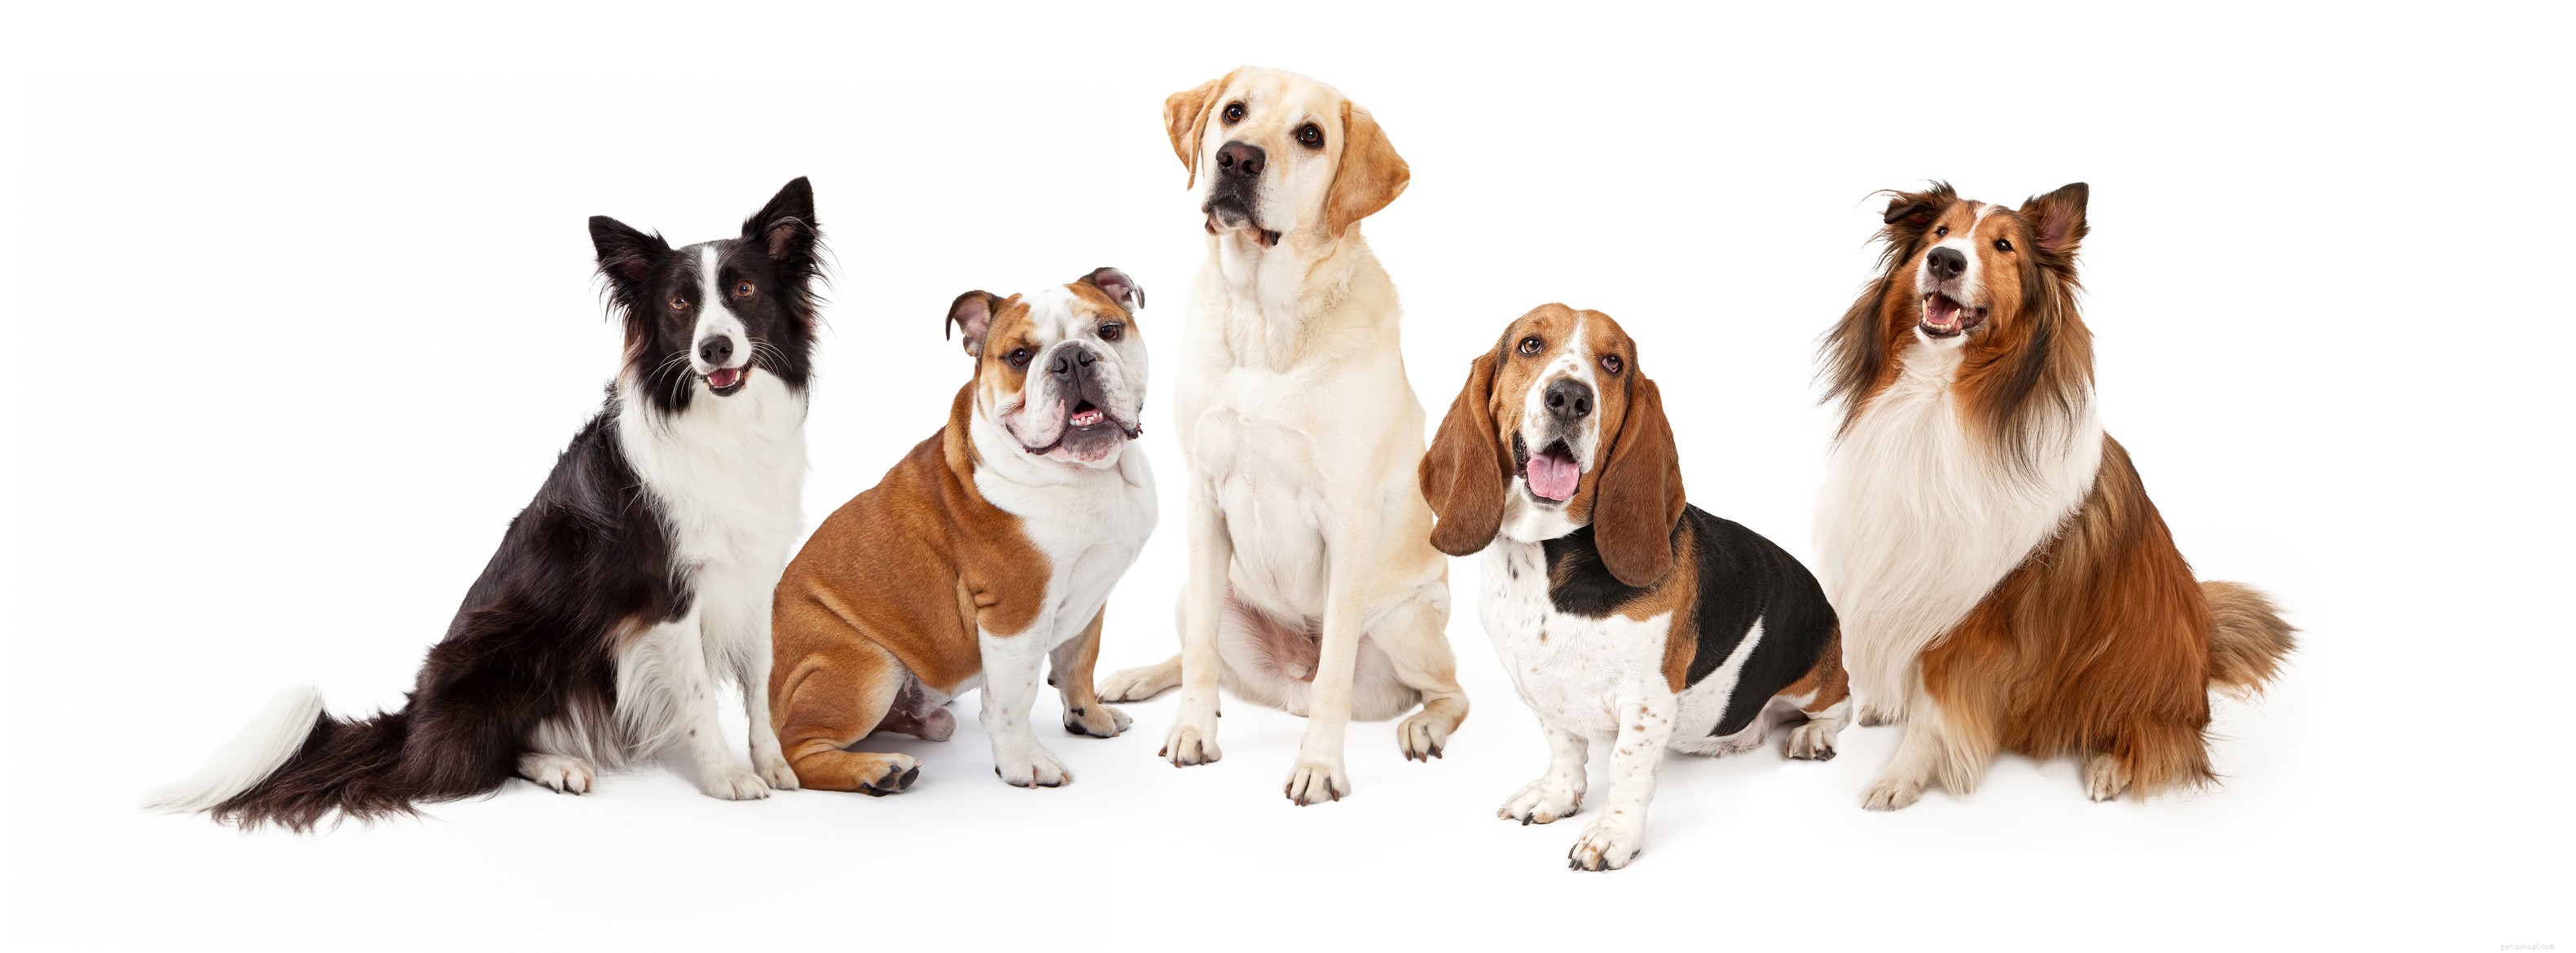 Давайте посмотрим на популярные и милые породы средних собак